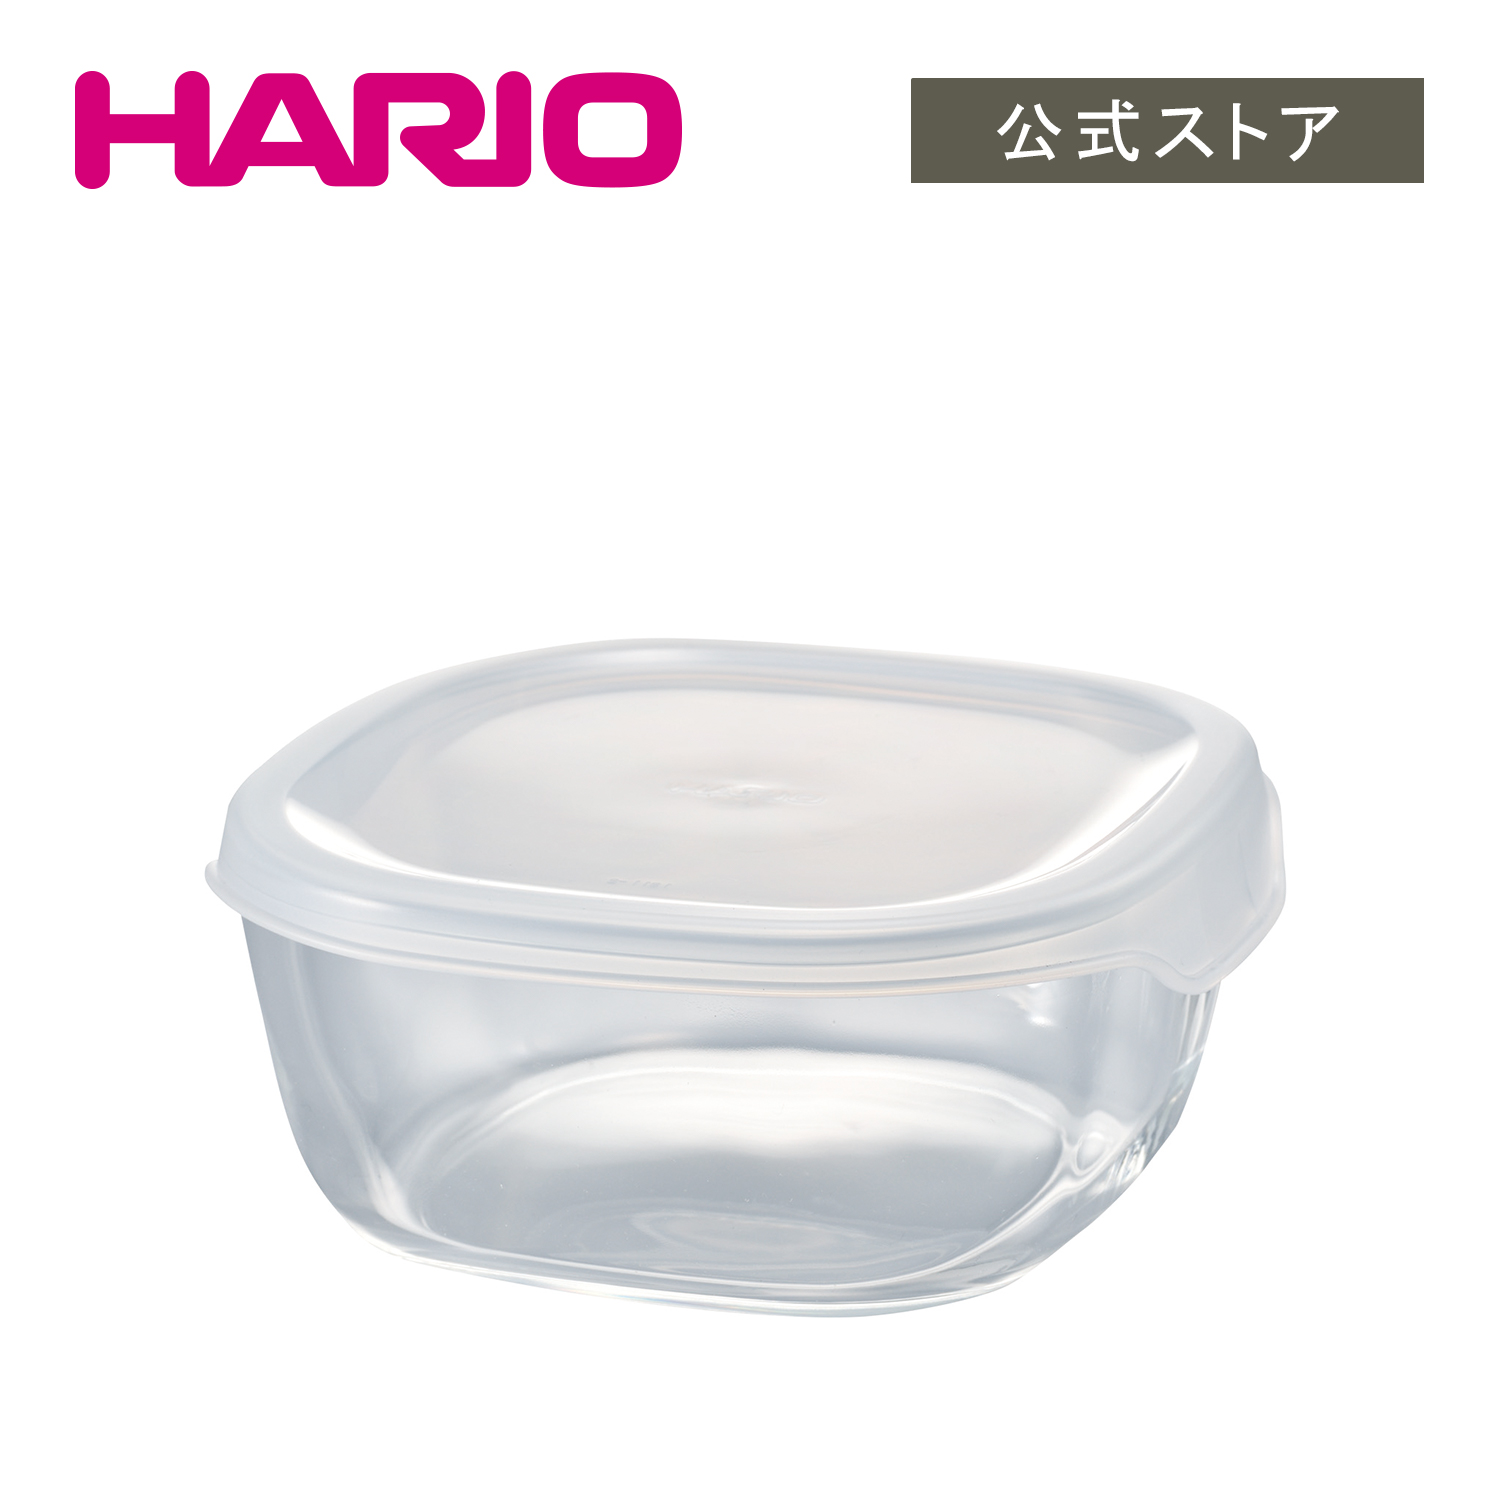 楽天市場】【公式ショップ】HARIO 耐熱ガラス製片口ボウル200 : HARIO